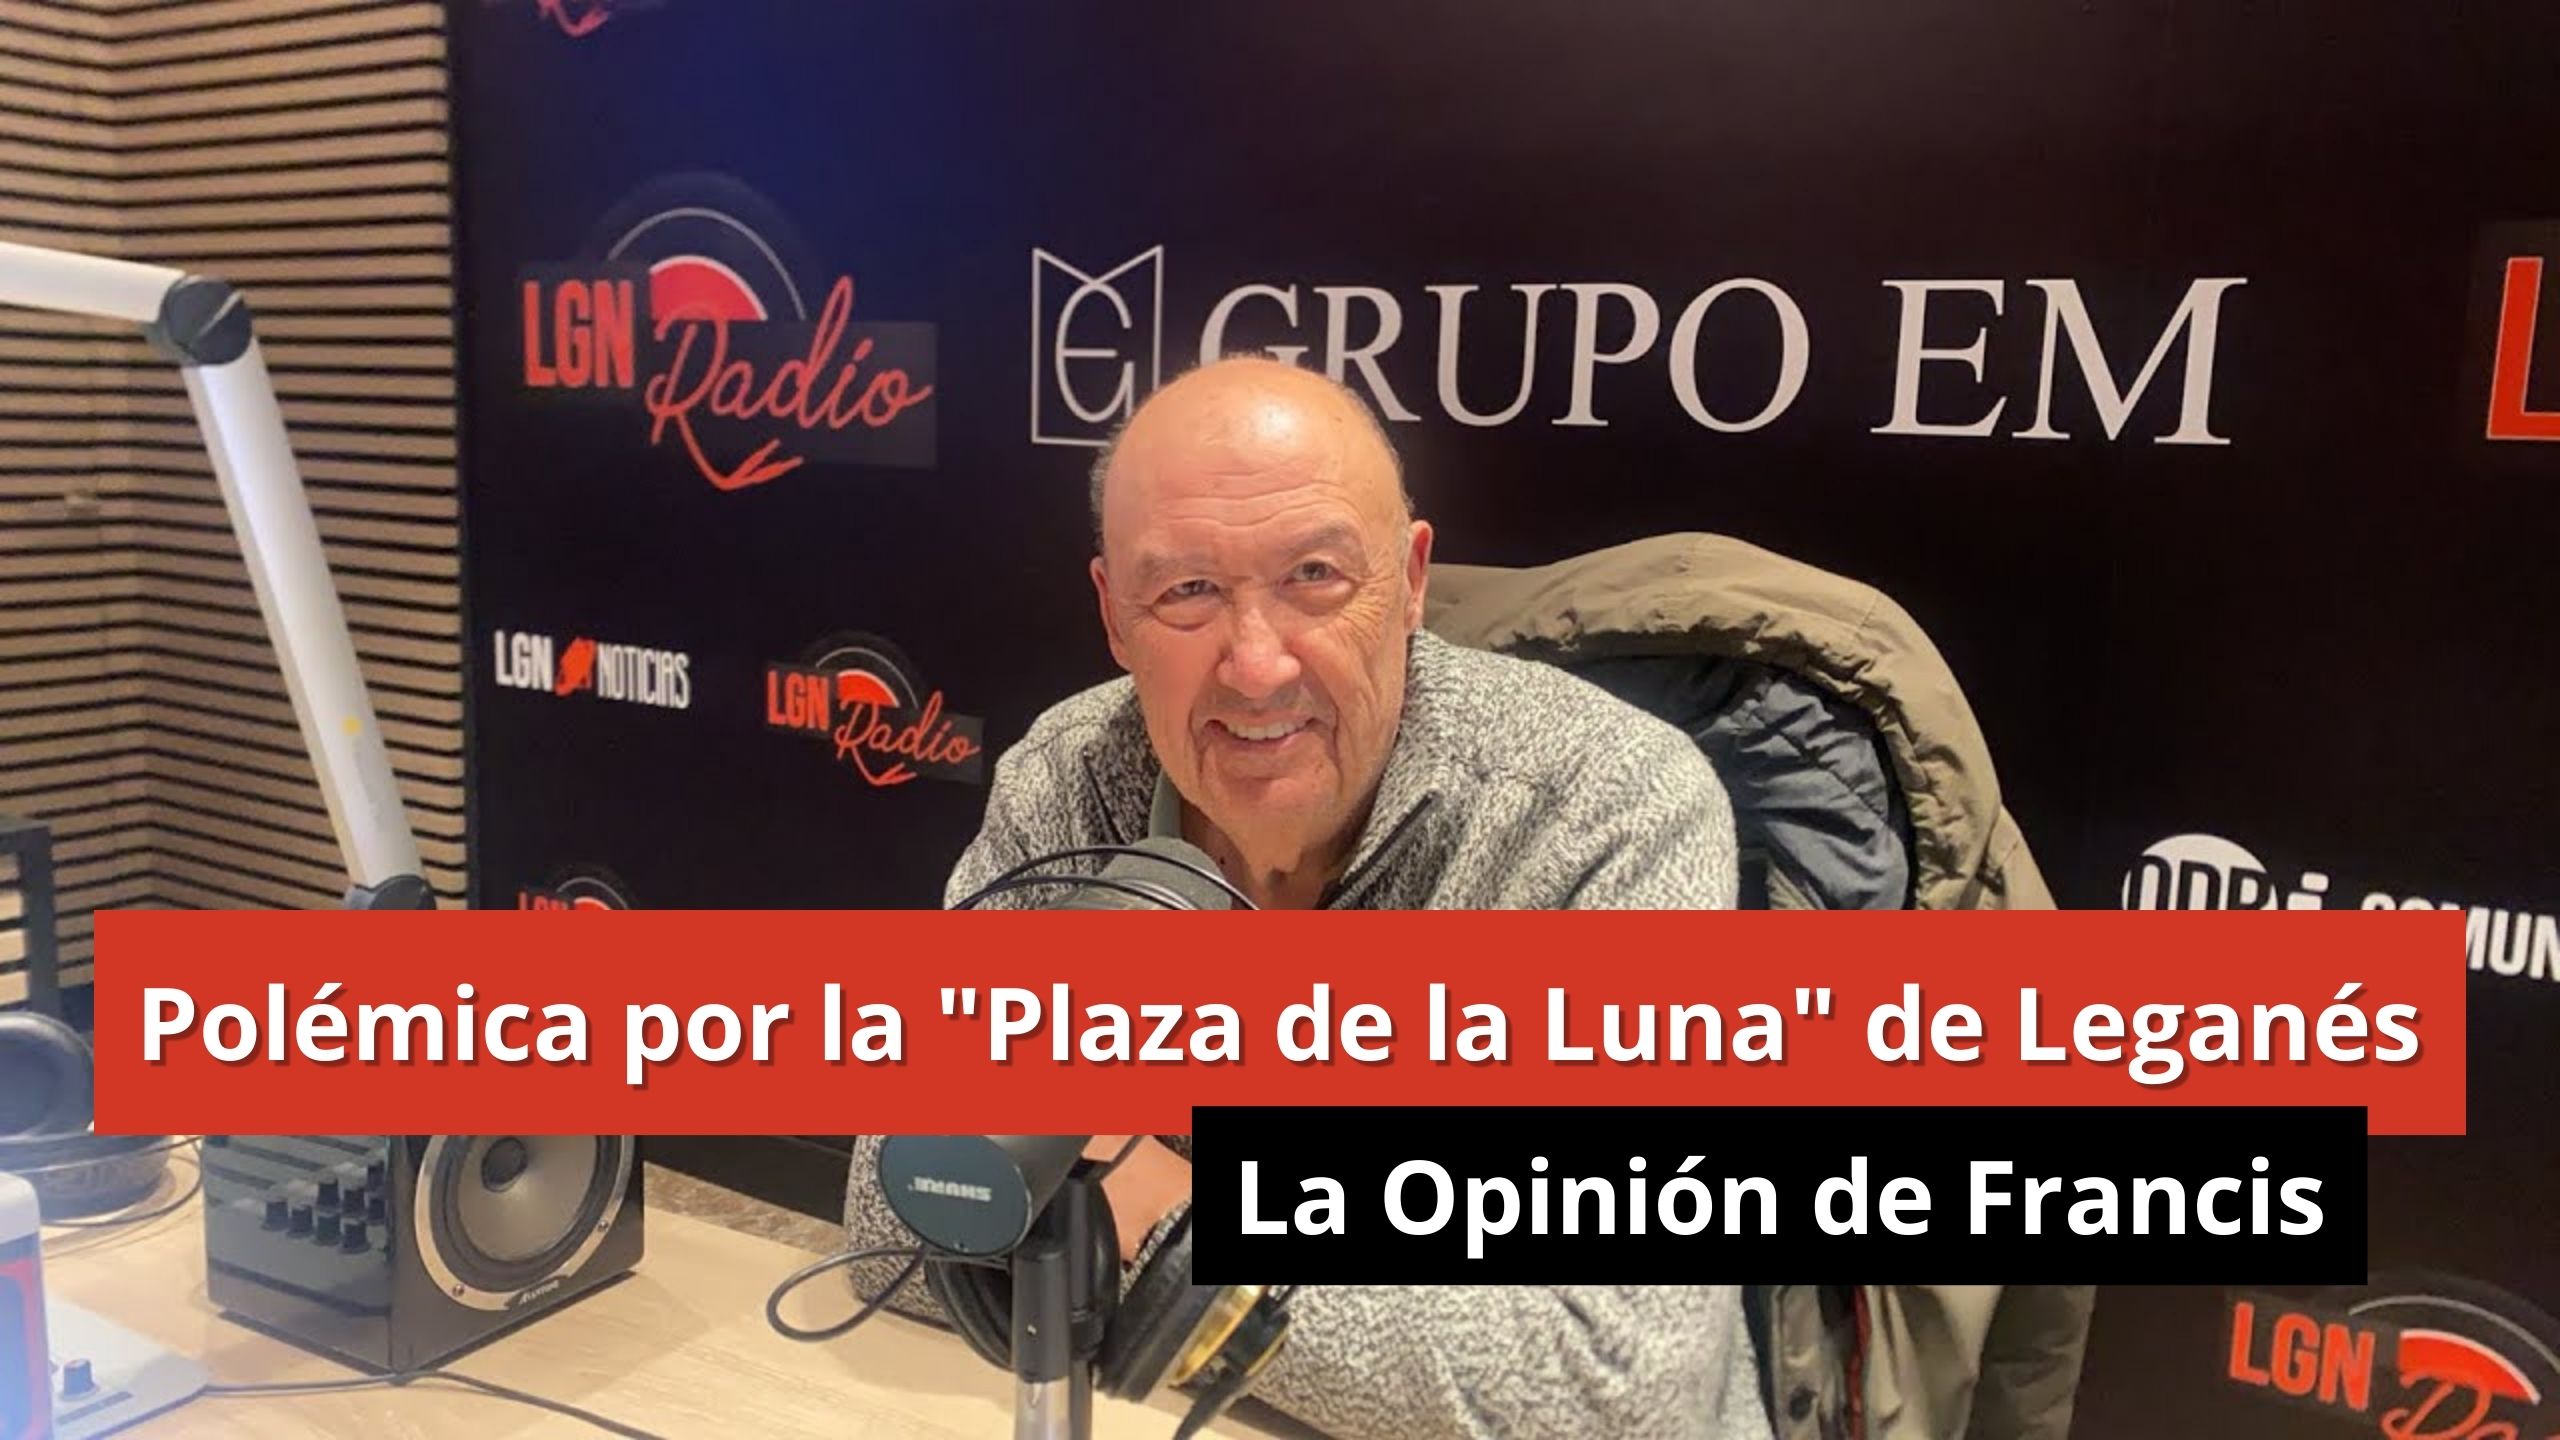 09-01-24 Polémica por la "Plaza de la Luna" de Leganés - La opinión de Francis